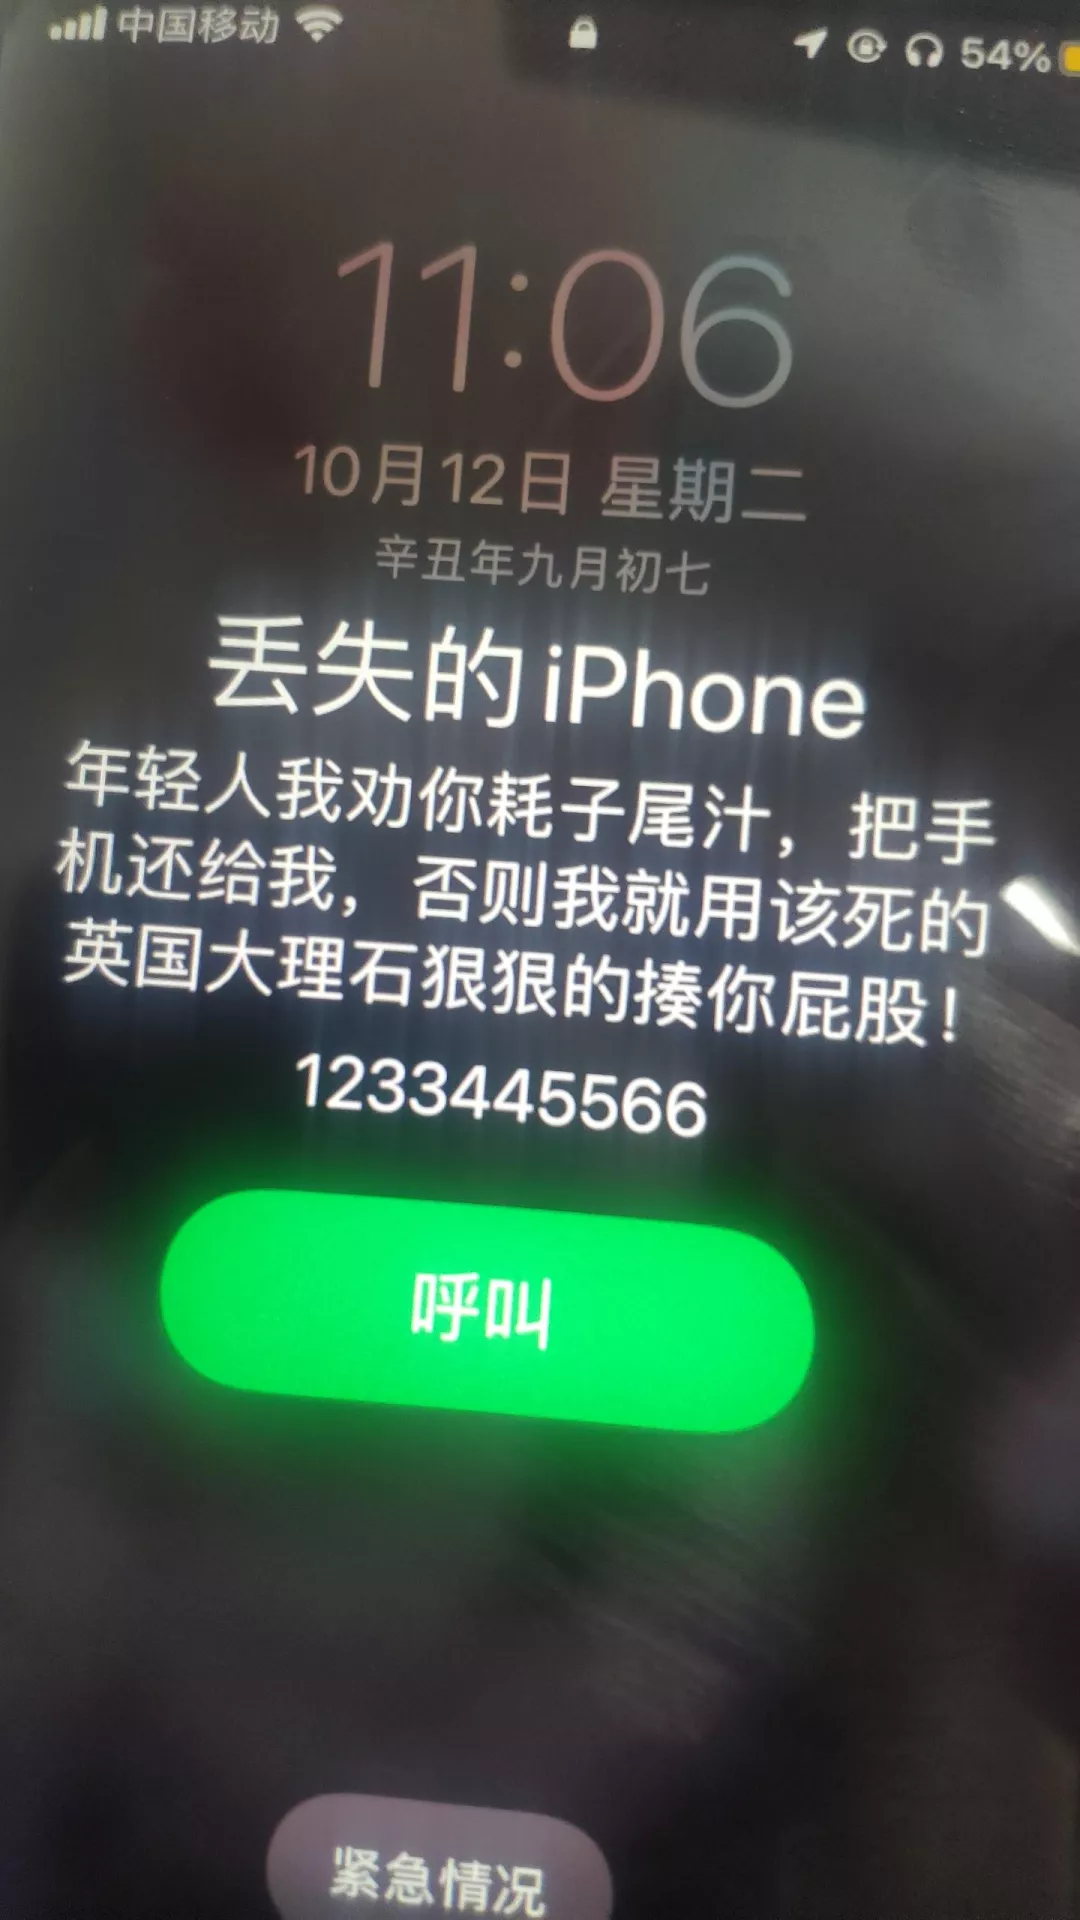 i.mi.com查找手机（小米定位查询 im com）